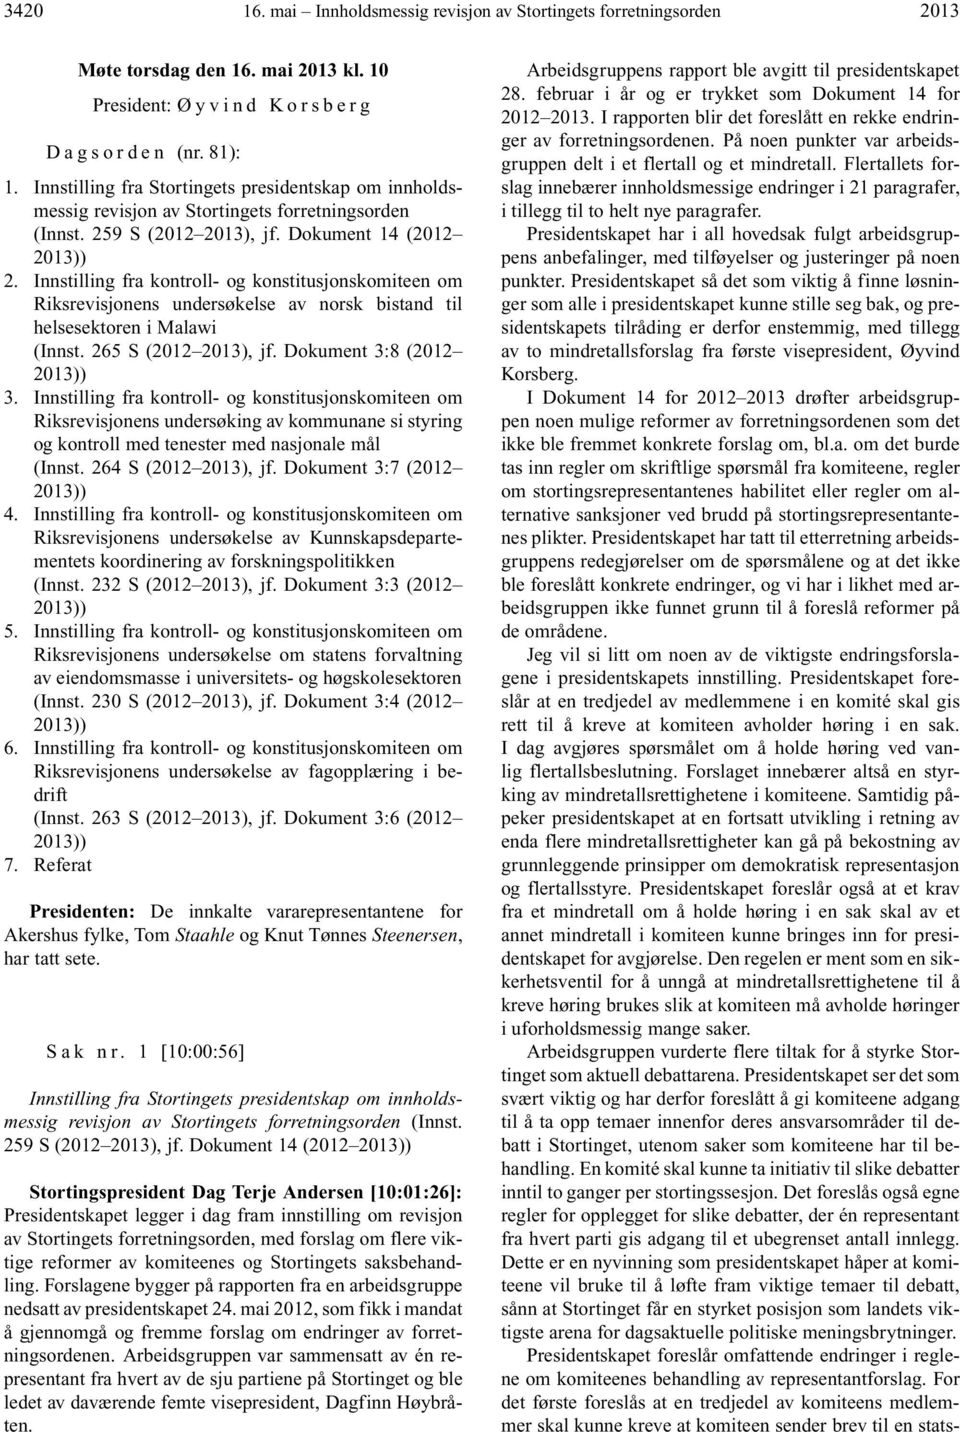 Innstilling fra kontroll- og konstitusjonskomiteen om Riksrevisjonens undersøkelse av norsk bistand til helsesektoren i Malawi (Innst. 265 S (2012 2013), jf. Dokument 3:8 (2012 2013)) 3.